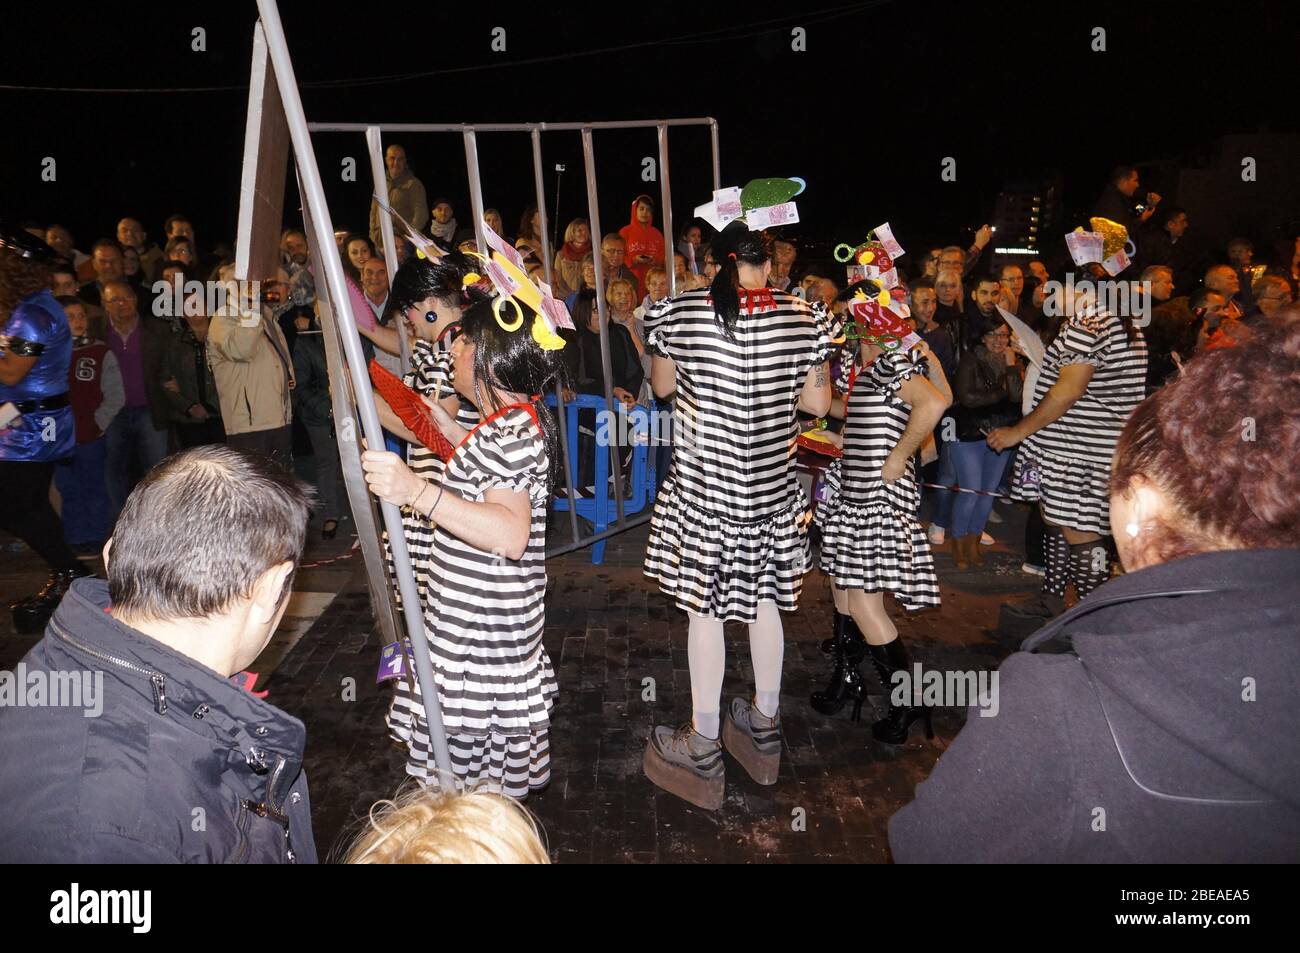 Karneval für Männer auf Stöckelschuhen - Macarita ponte tacon, Puerto de la Cruz, Teneriffa, Kanaren, Spanien Stock Photo